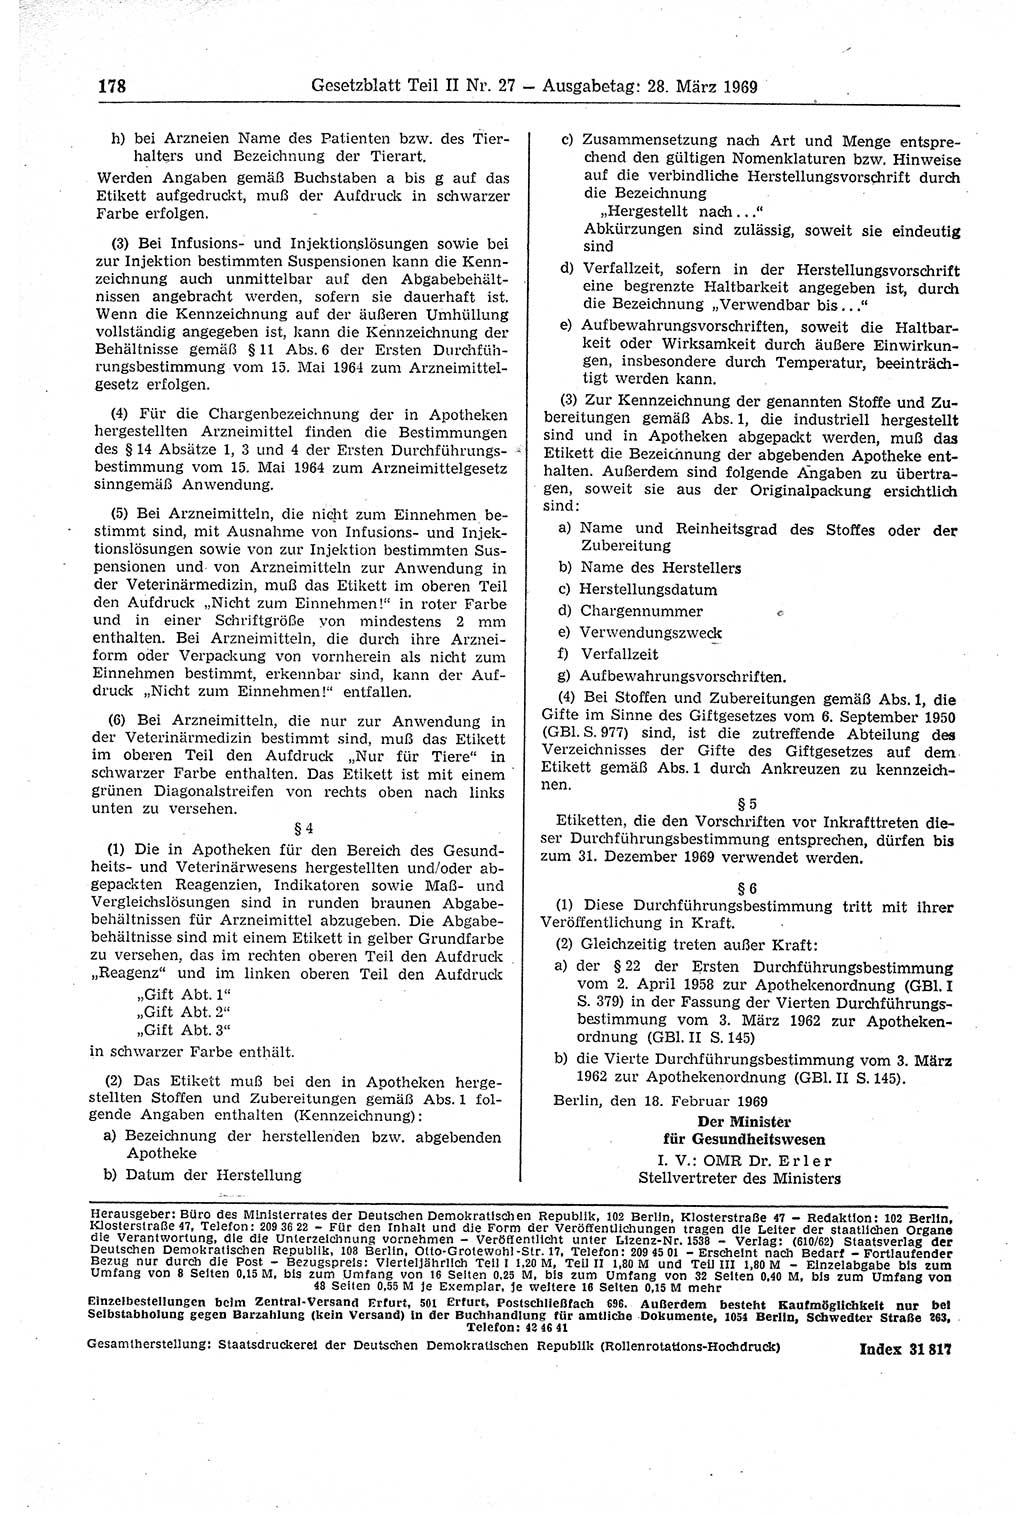 Gesetzblatt (GBl.) der Deutschen Demokratischen Republik (DDR) Teil ⅠⅠ 1969, Seite 178 (GBl. DDR ⅠⅠ 1969, S. 178)